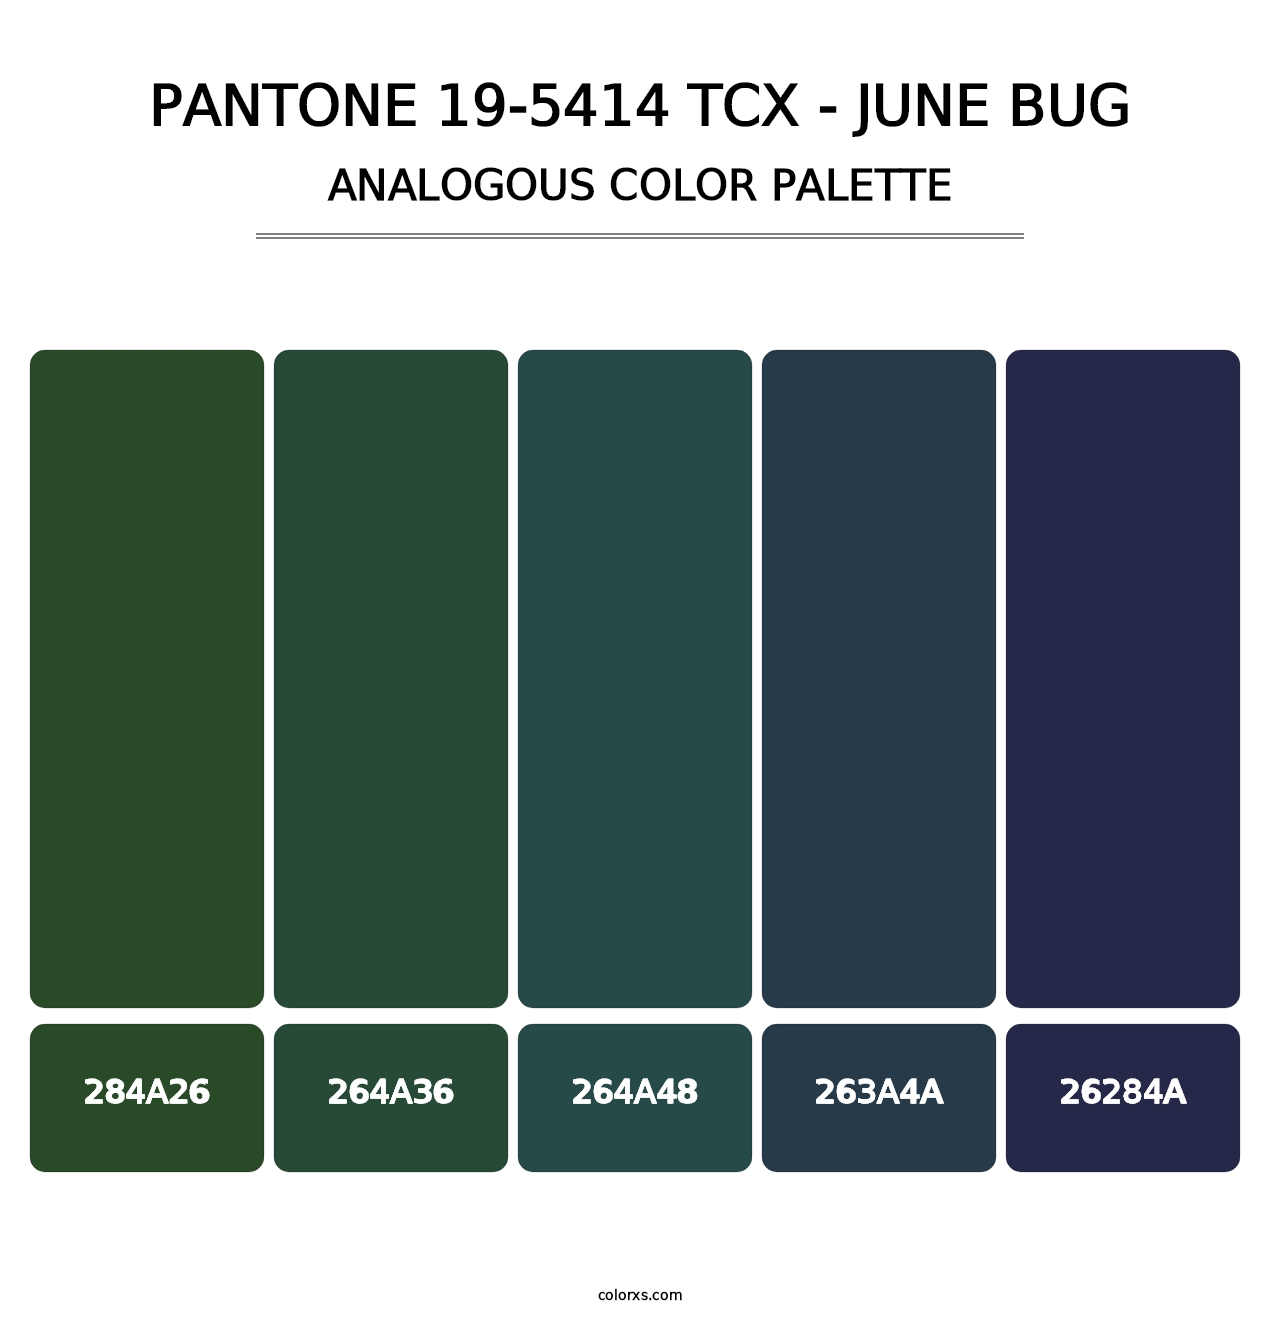 PANTONE 19-5414 TCX - June Bug - Analogous Color Palette